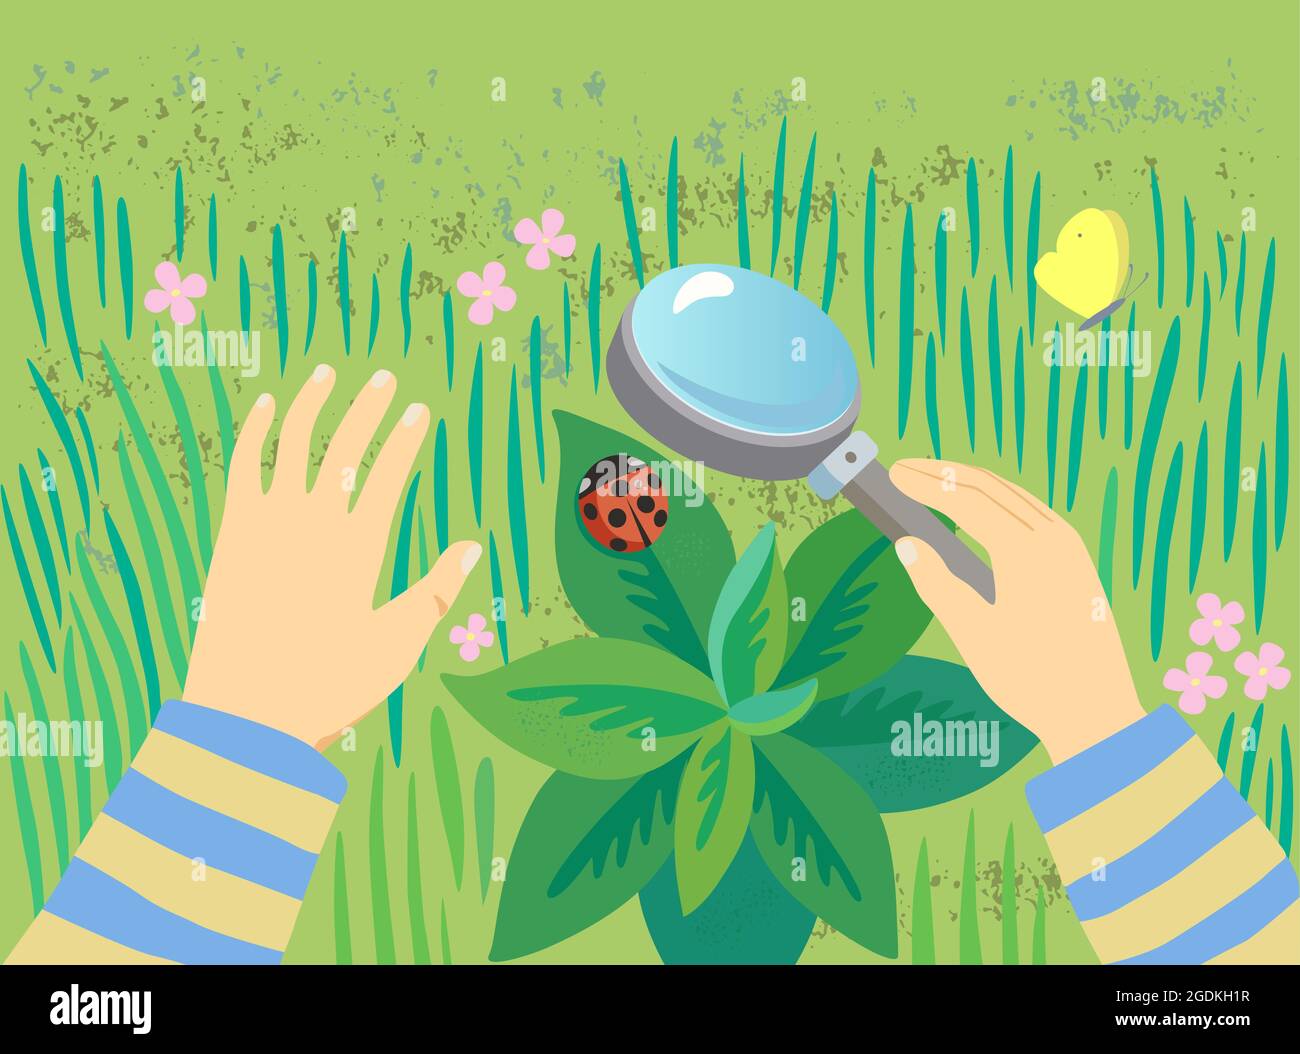 Das Kind untersucht einen Marienkäfer durch eine Lupe im grünen Gras. Aus Sicht der ersten Person. Konzeptionelle Illustration mit Kopierbereich Stock Vektor